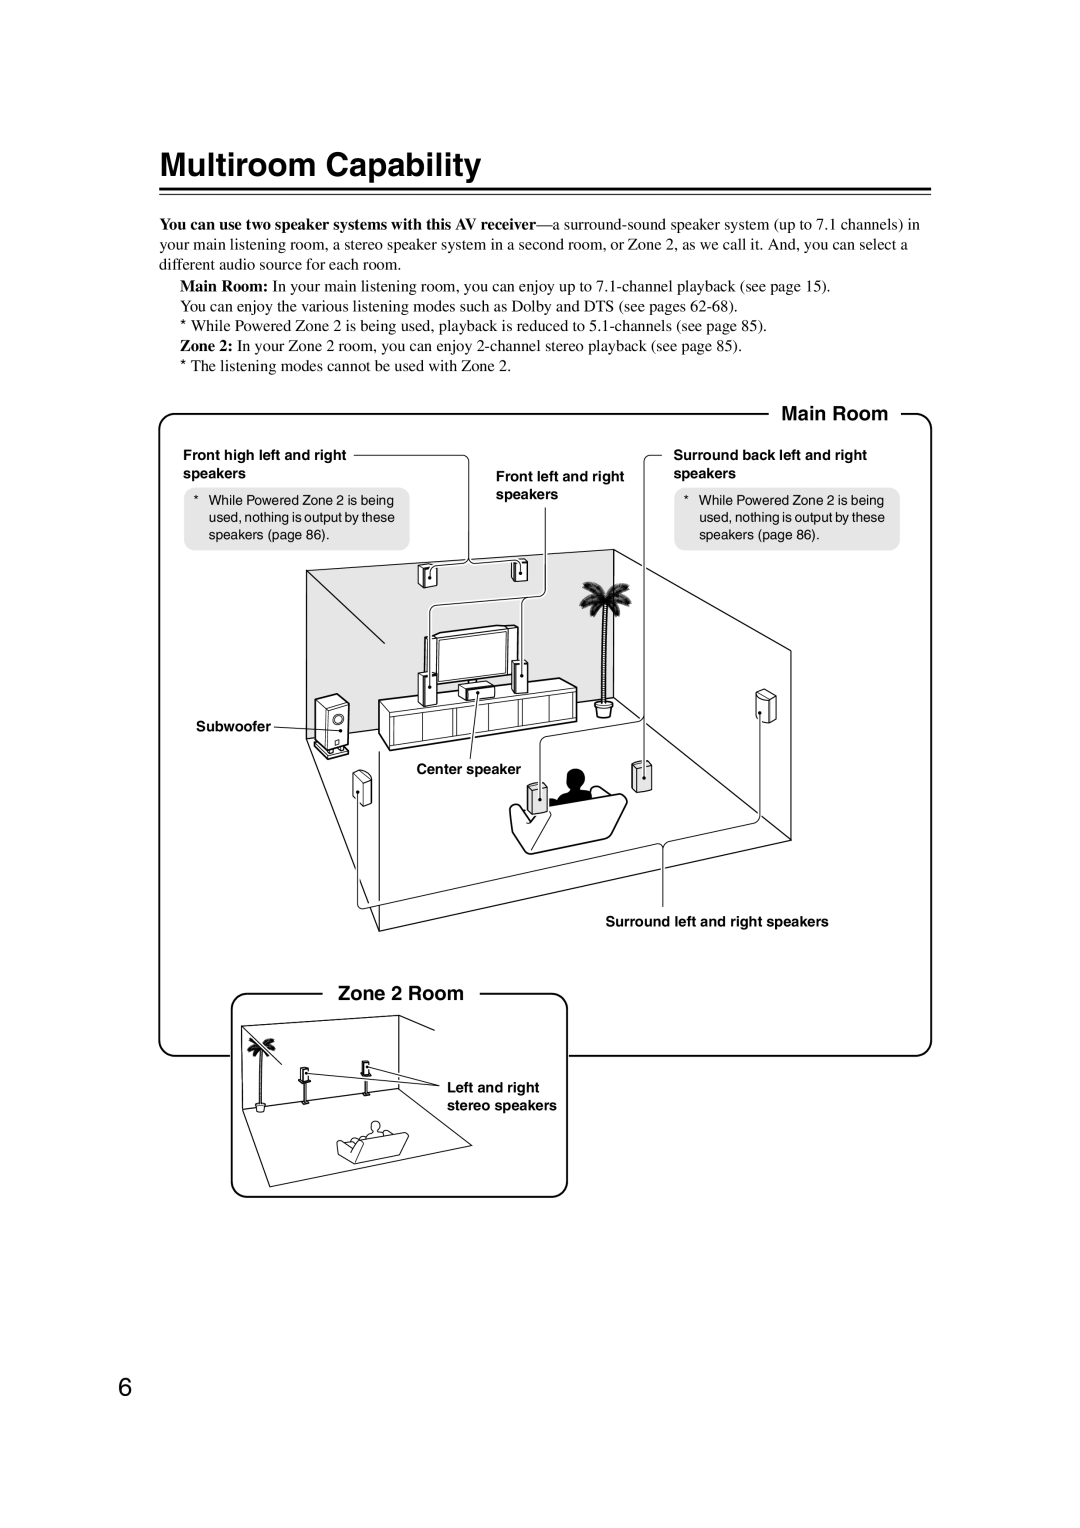 Onkyo SR607 instruction manual Multiroom Capability, Main Room, Zone 2 Room 